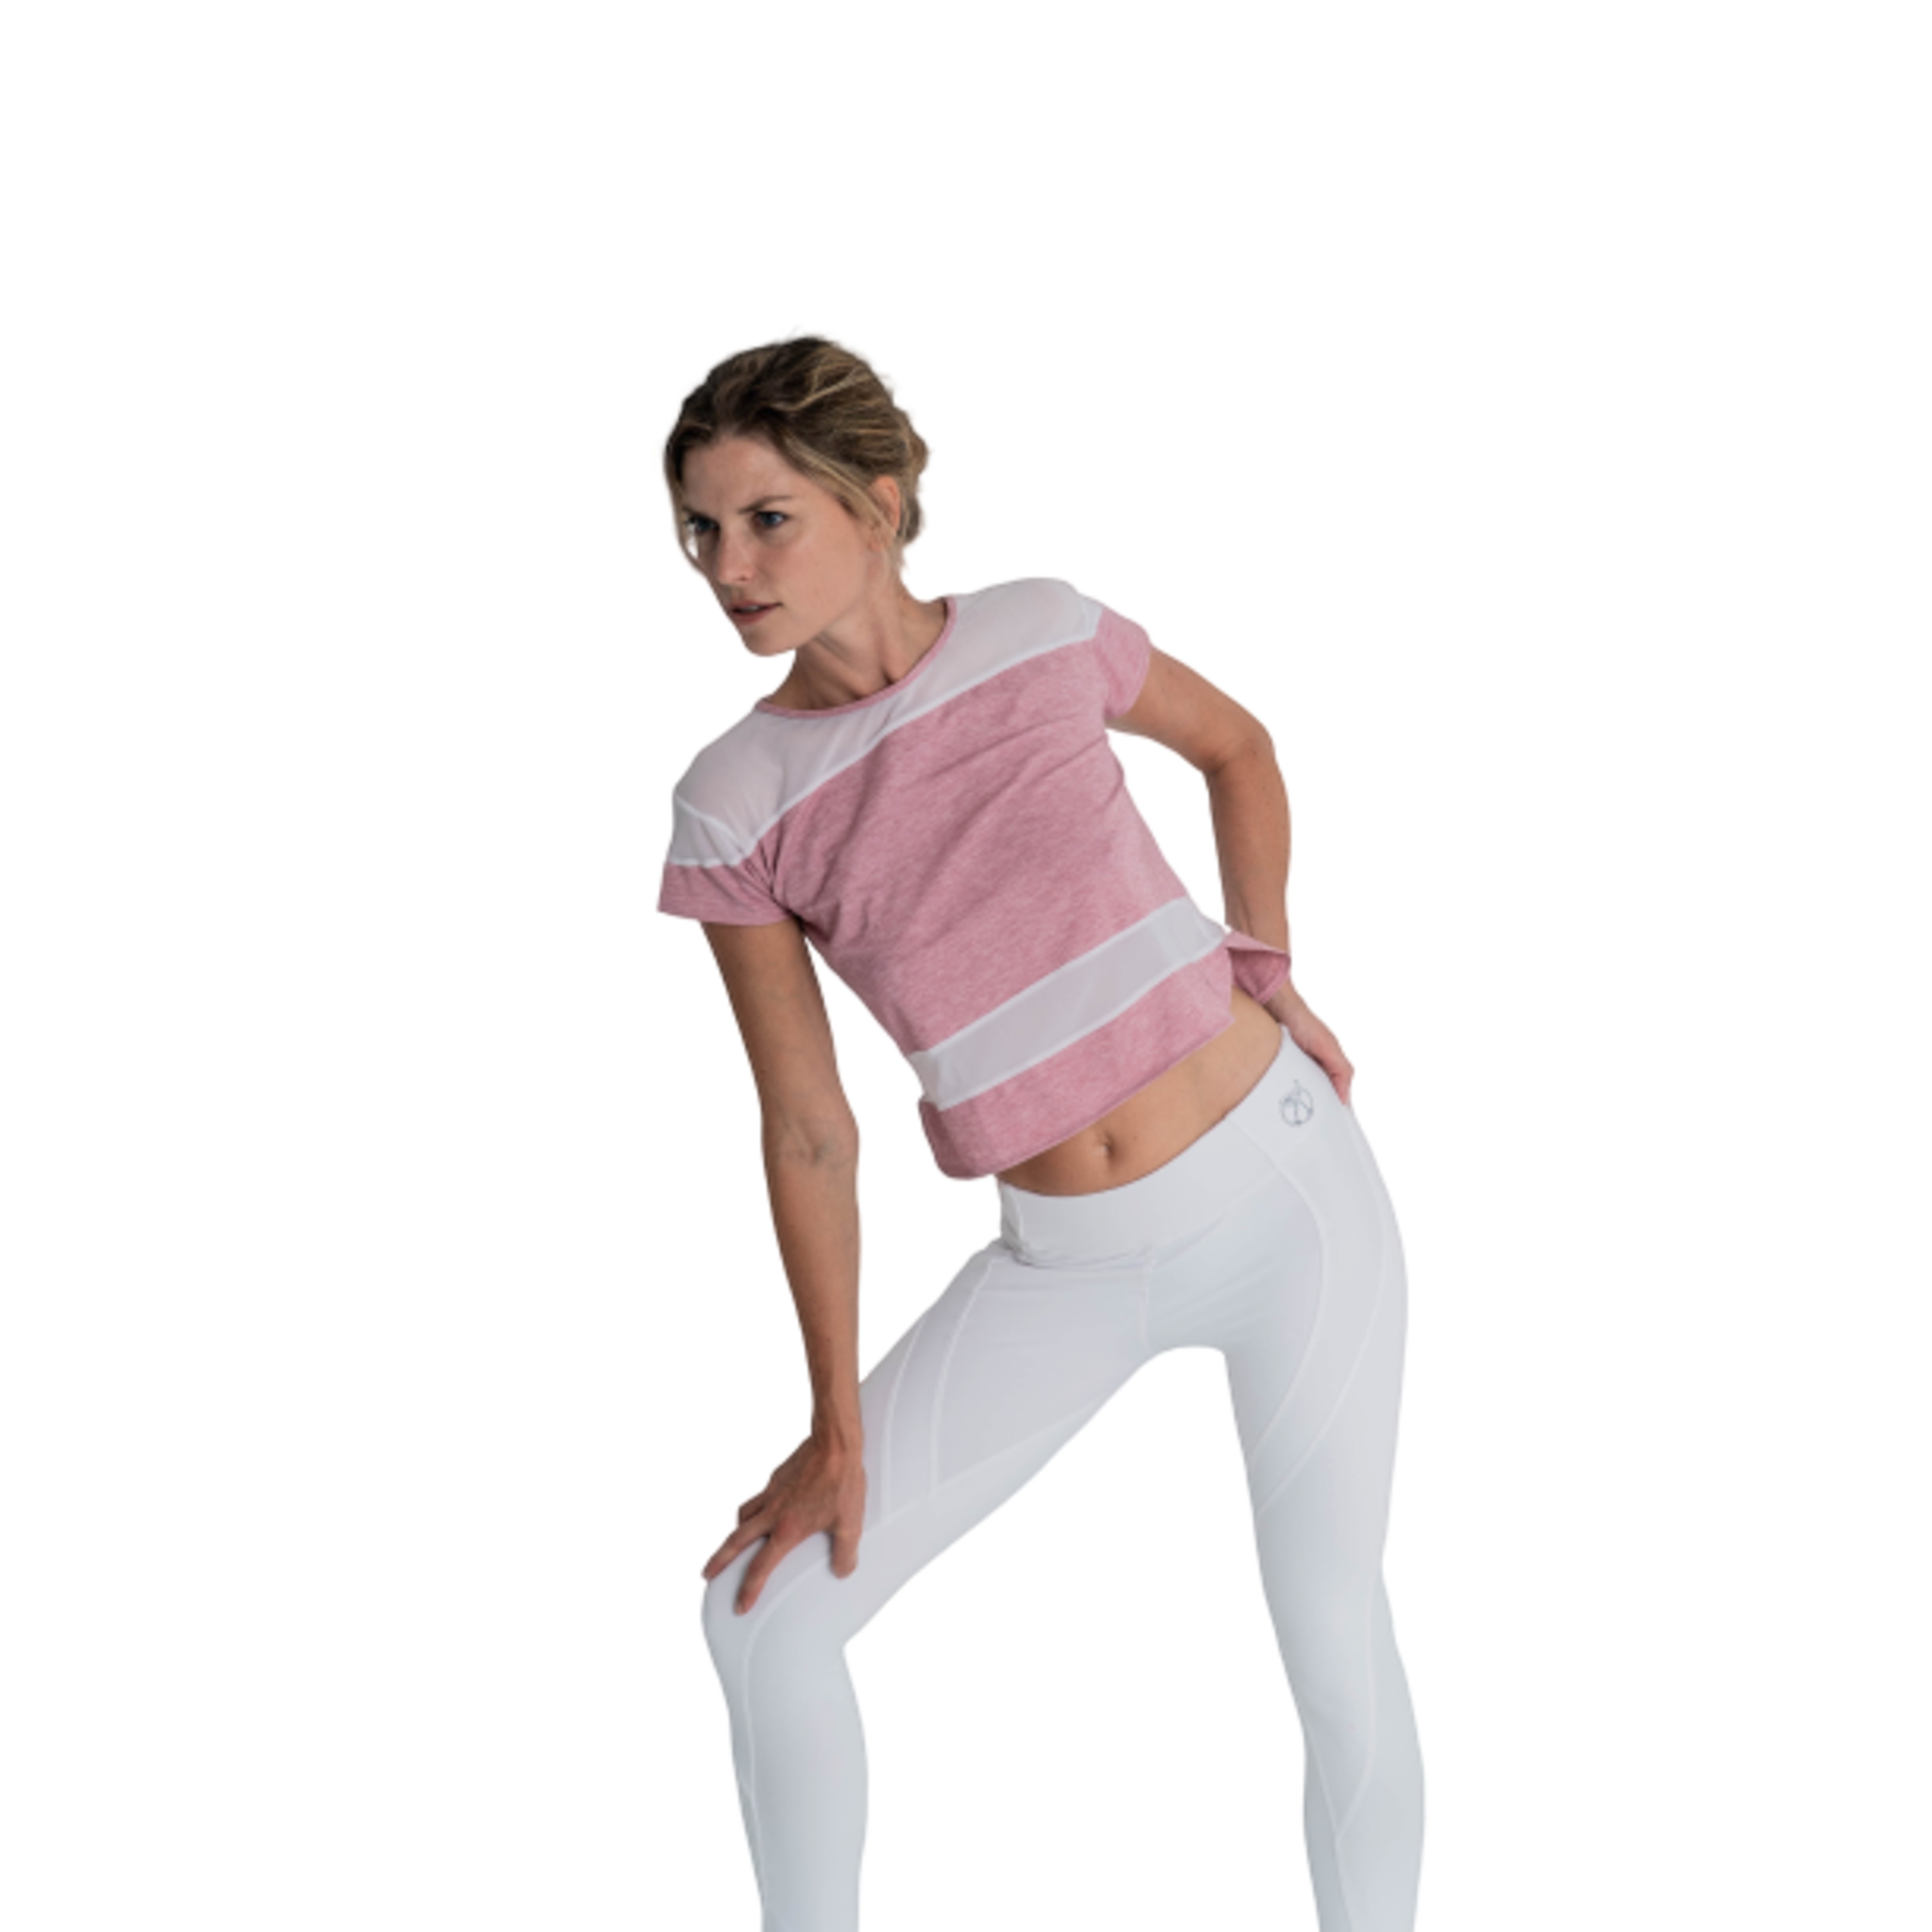 Camiseta Fitness Transpirable Rosa, Alana